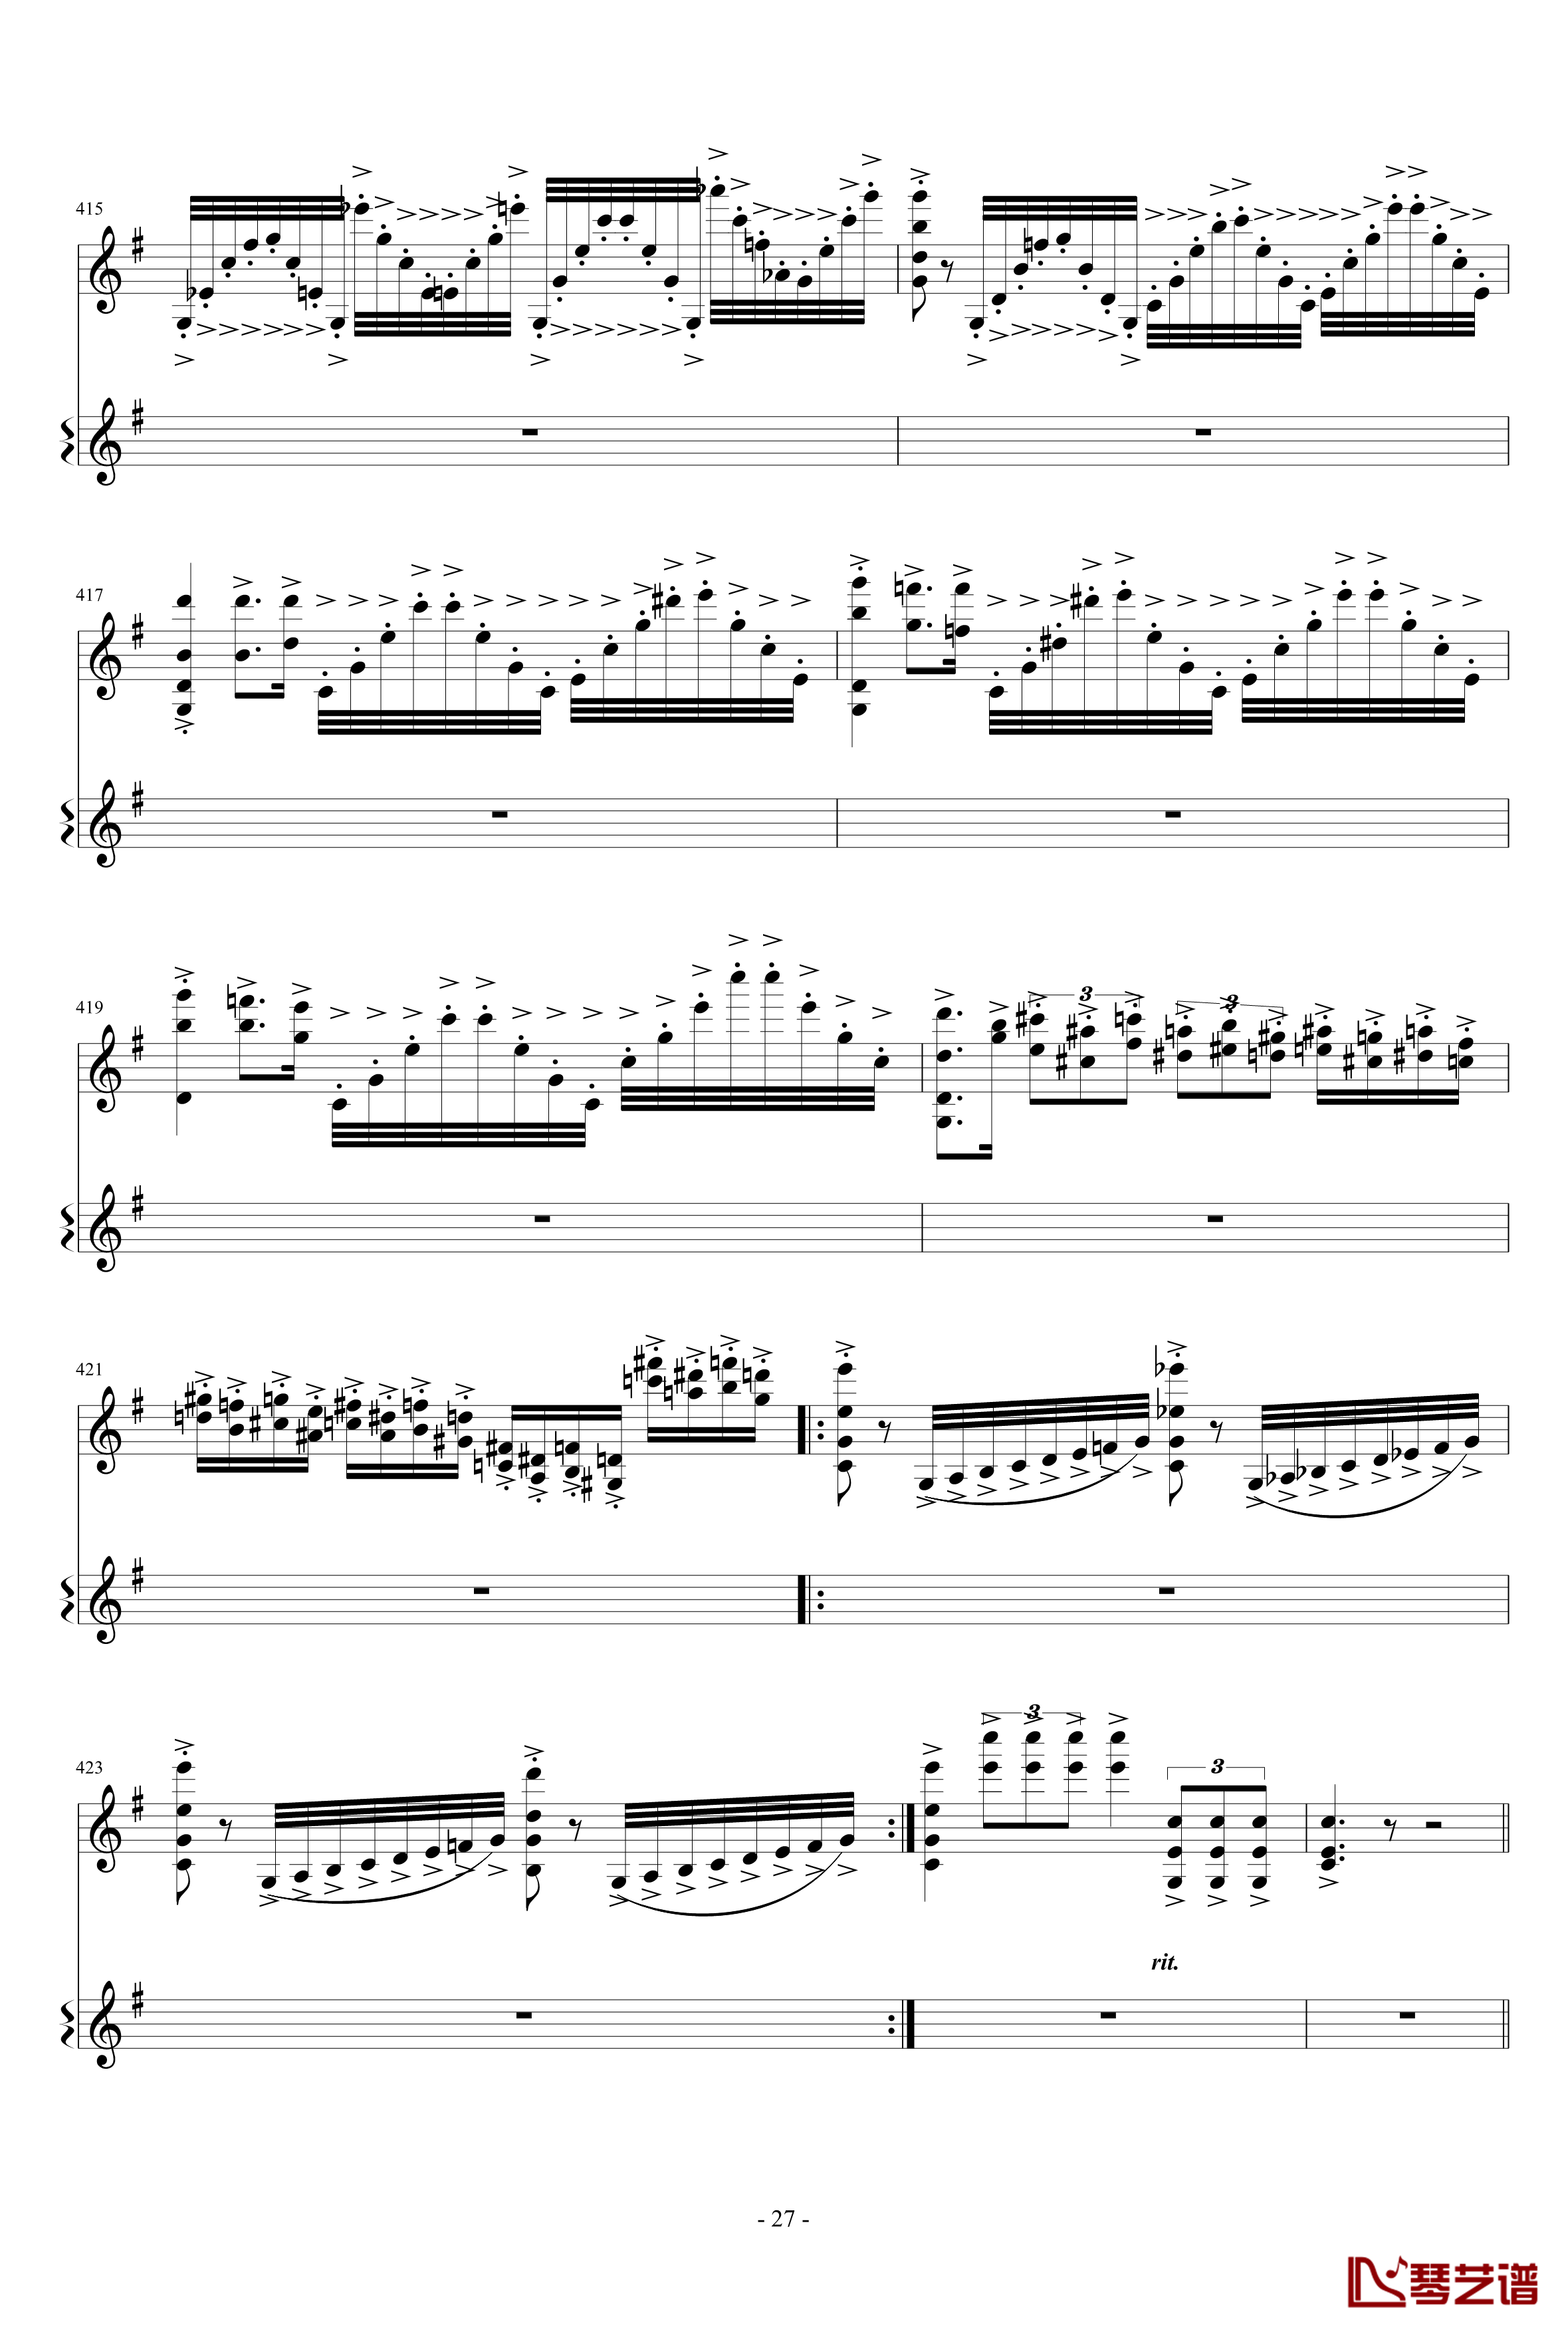 意大利国歌变奏曲钢琴谱-只修改了一个音-DXF27